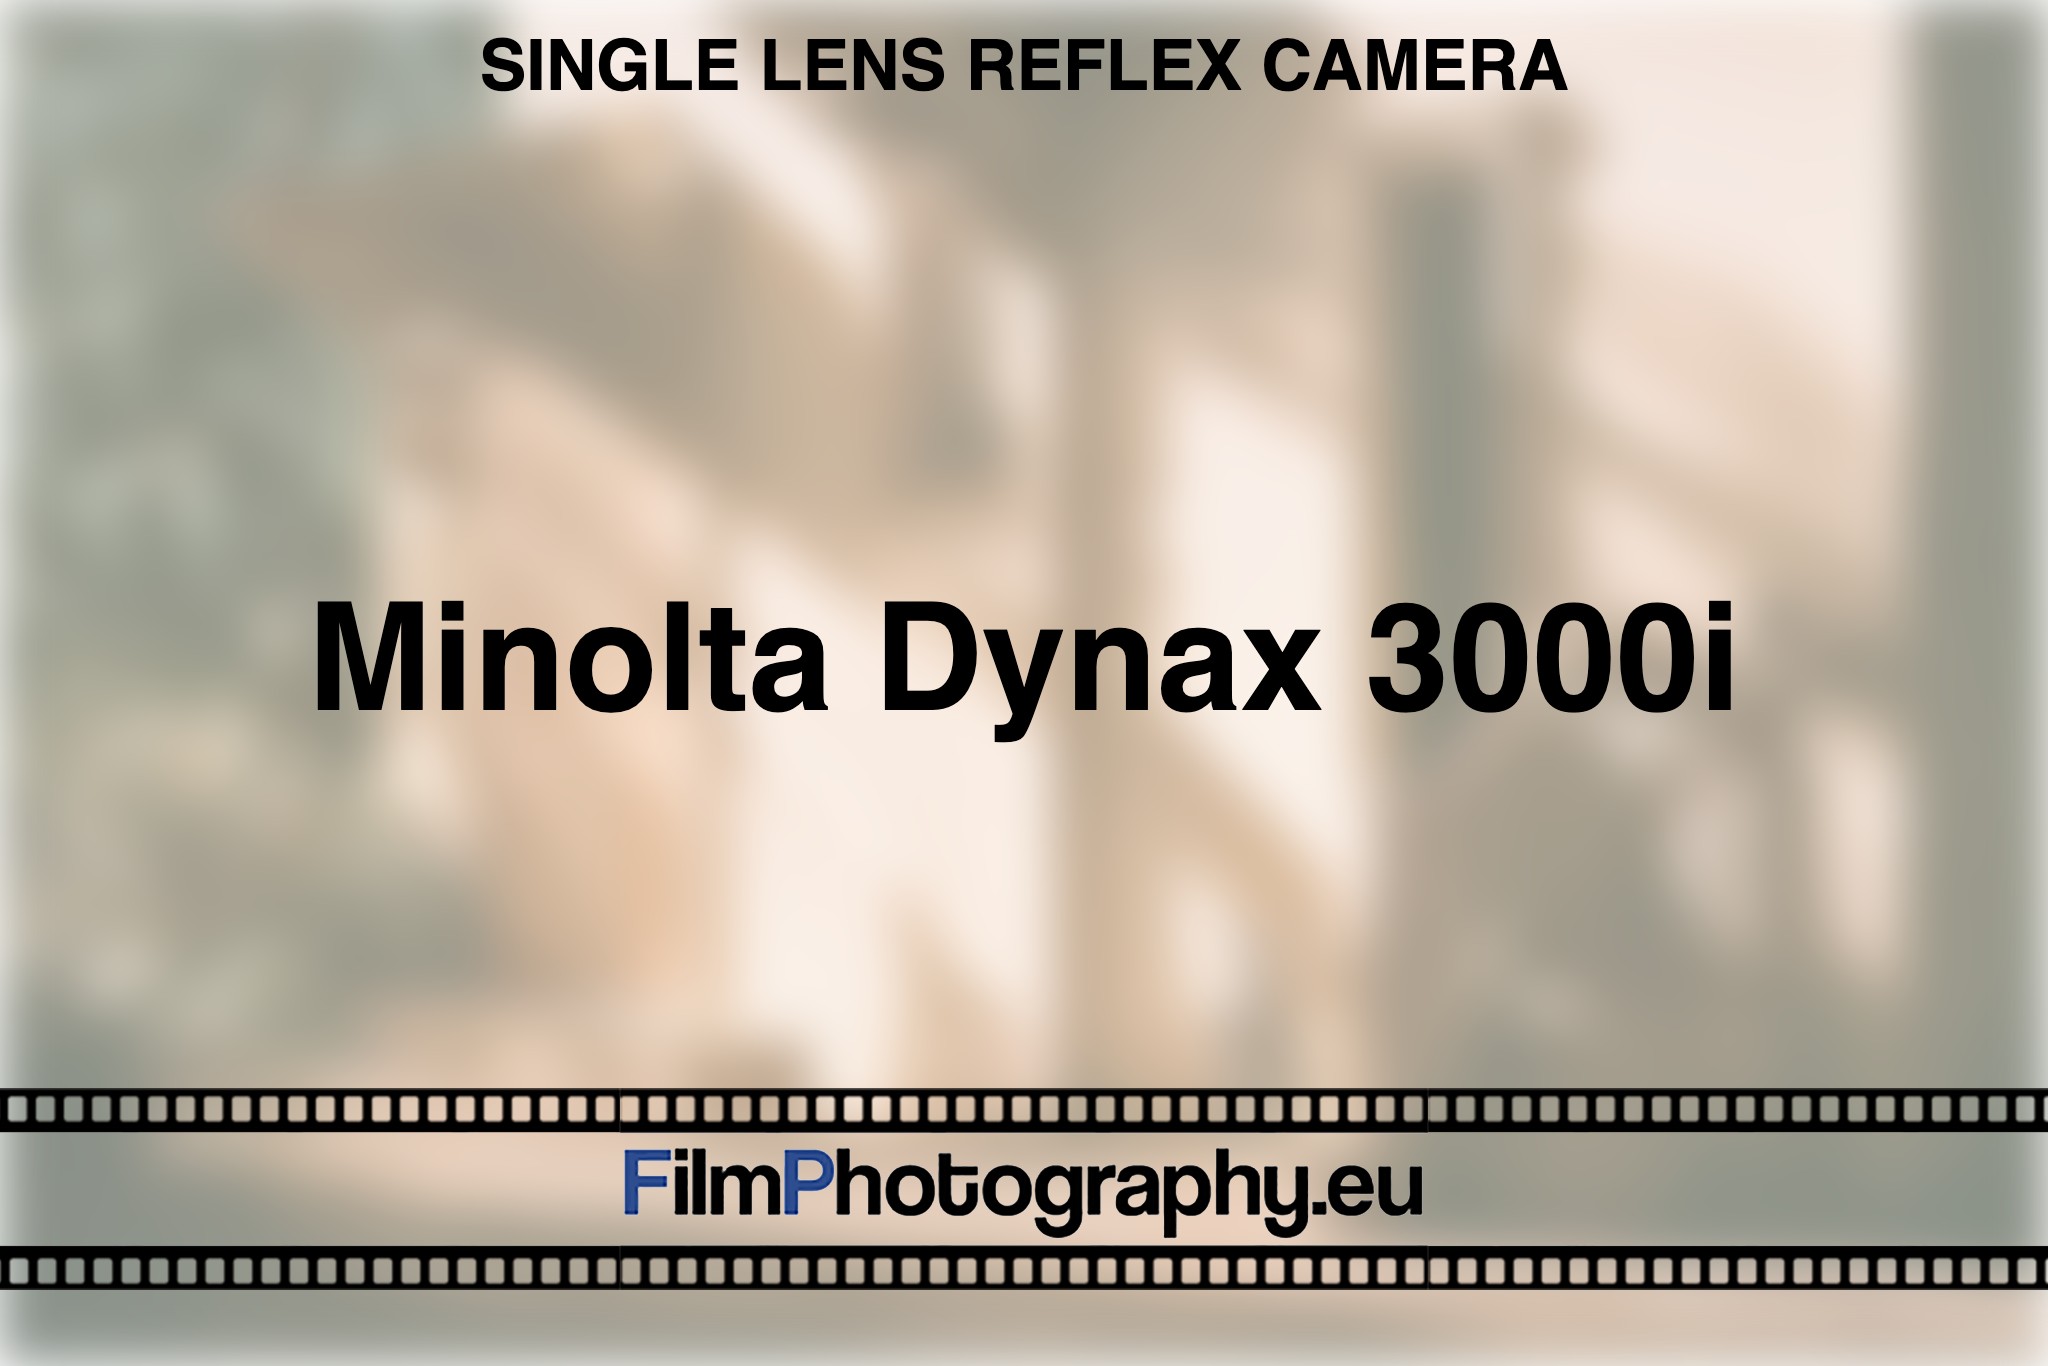 minolta-dynax-3000i-single-lens-reflex-camera-bnv